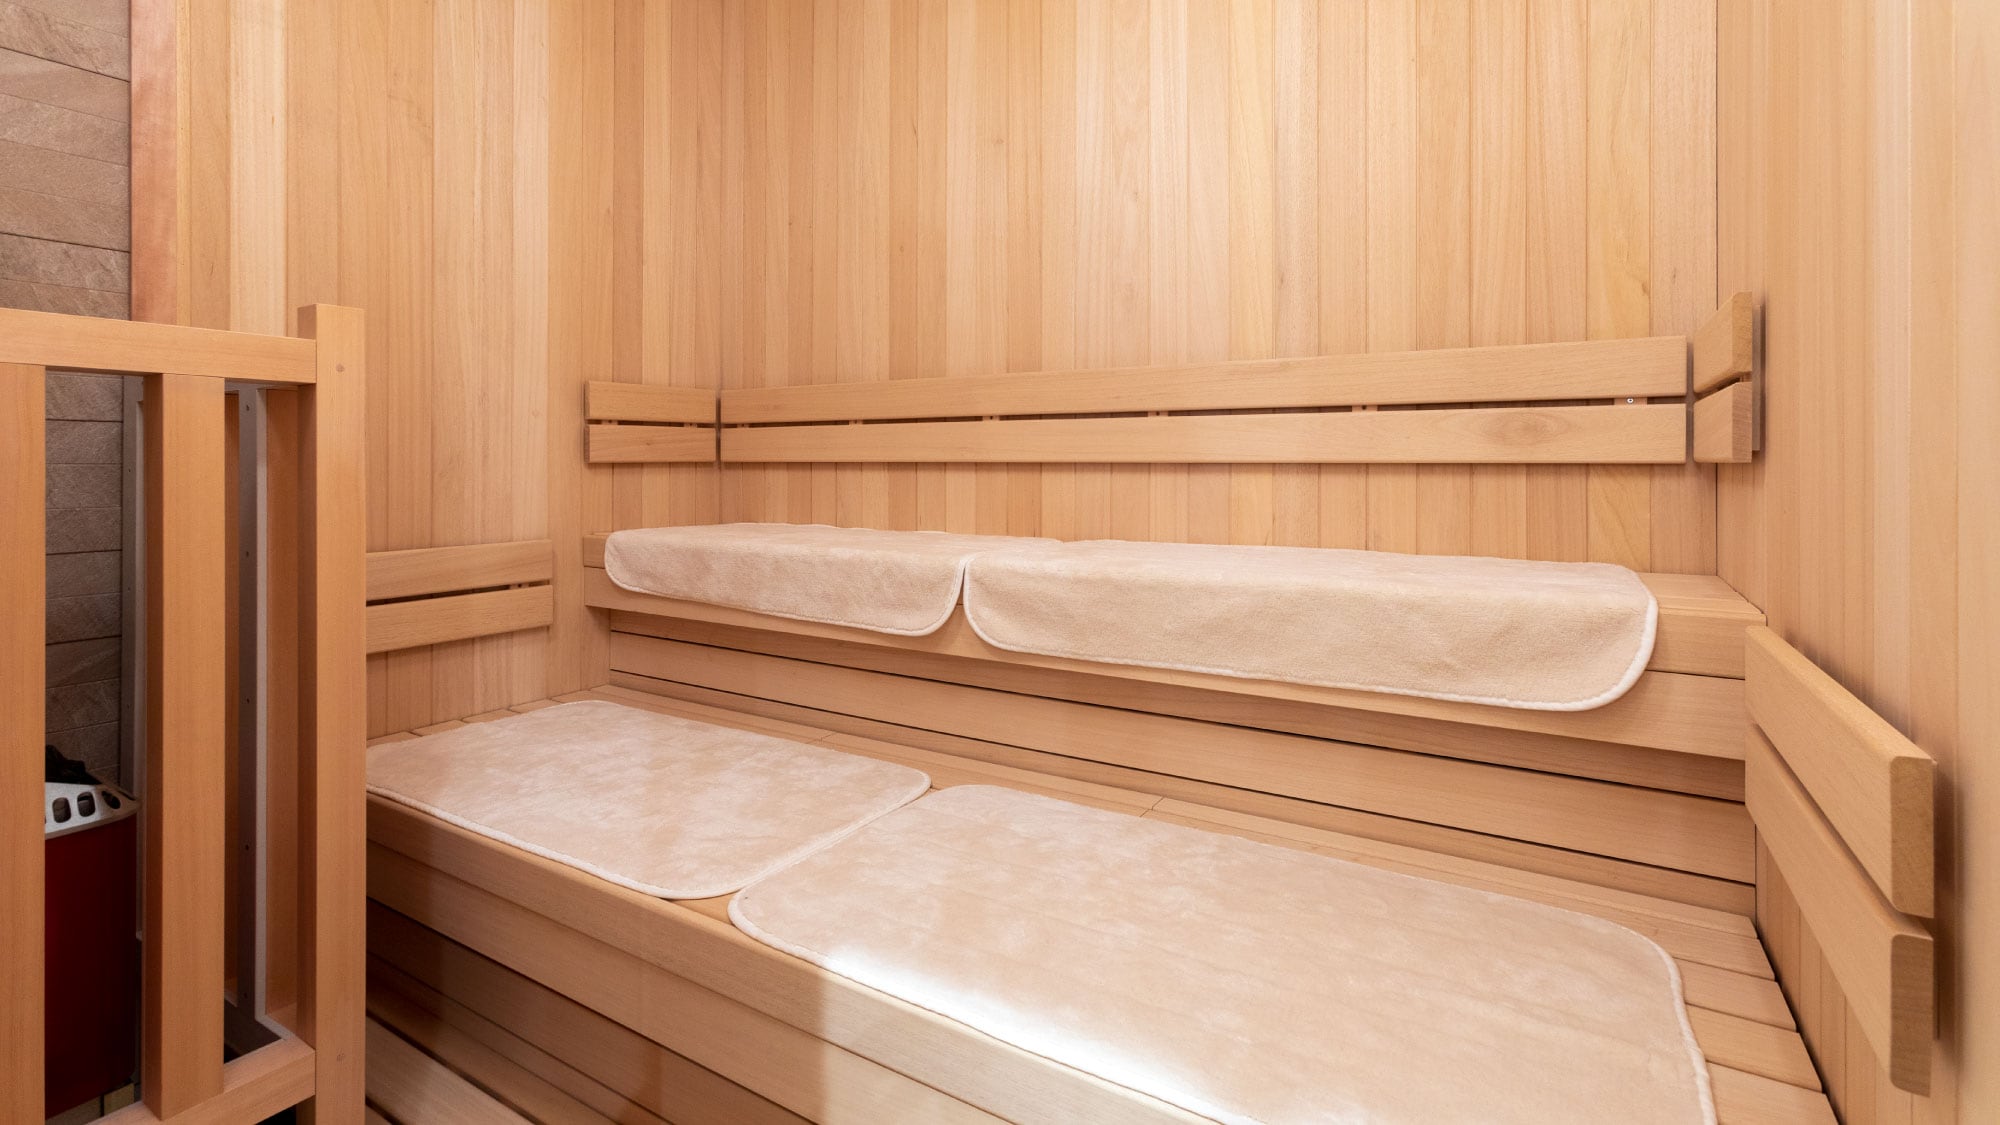 Men's bath sauna room * Men only